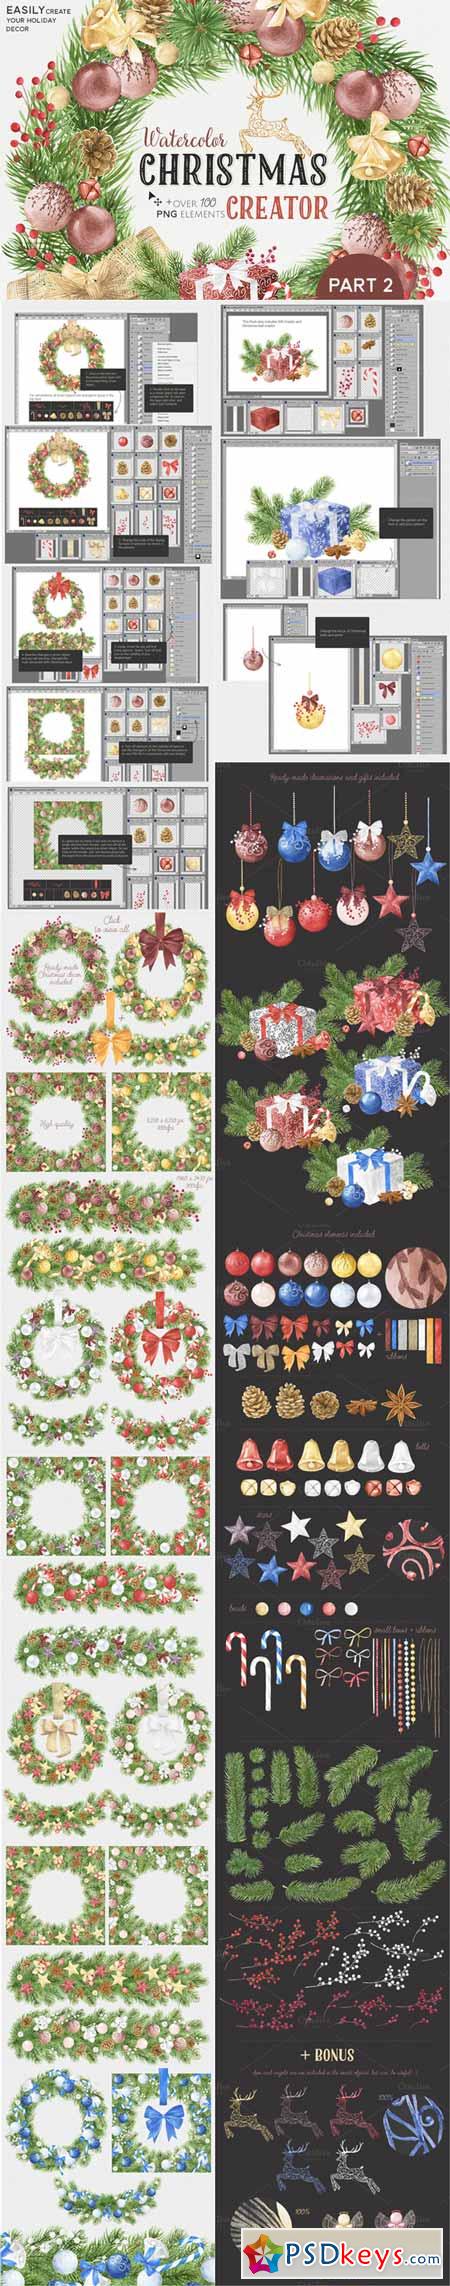 Watercolor Christmas Creator Pack #2 461773